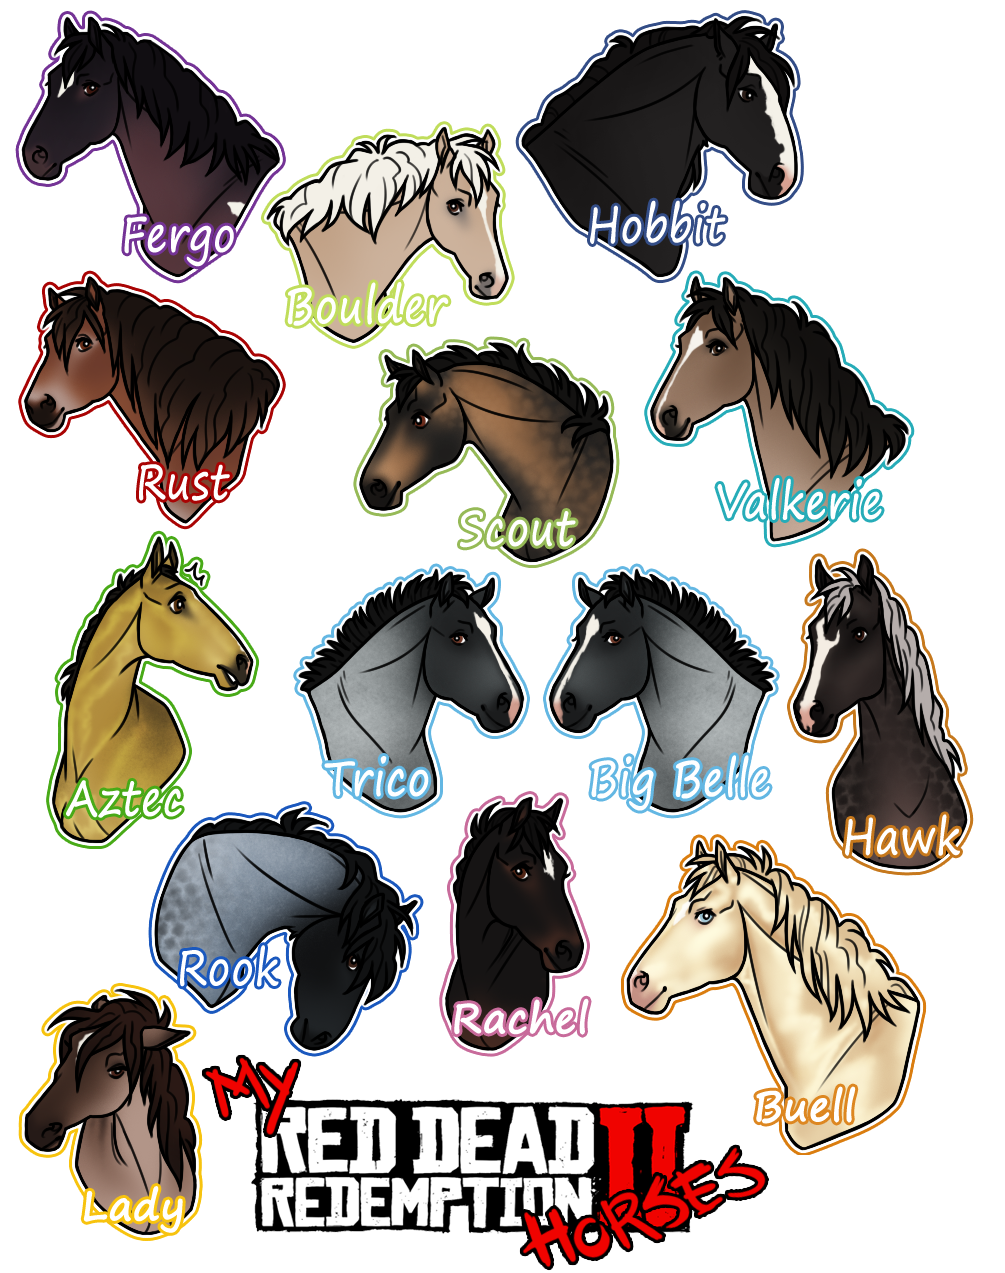 Diskutere fordelagtige deres My Red Dead Redemption 2 Horses! by Cat-Bells on DeviantArt